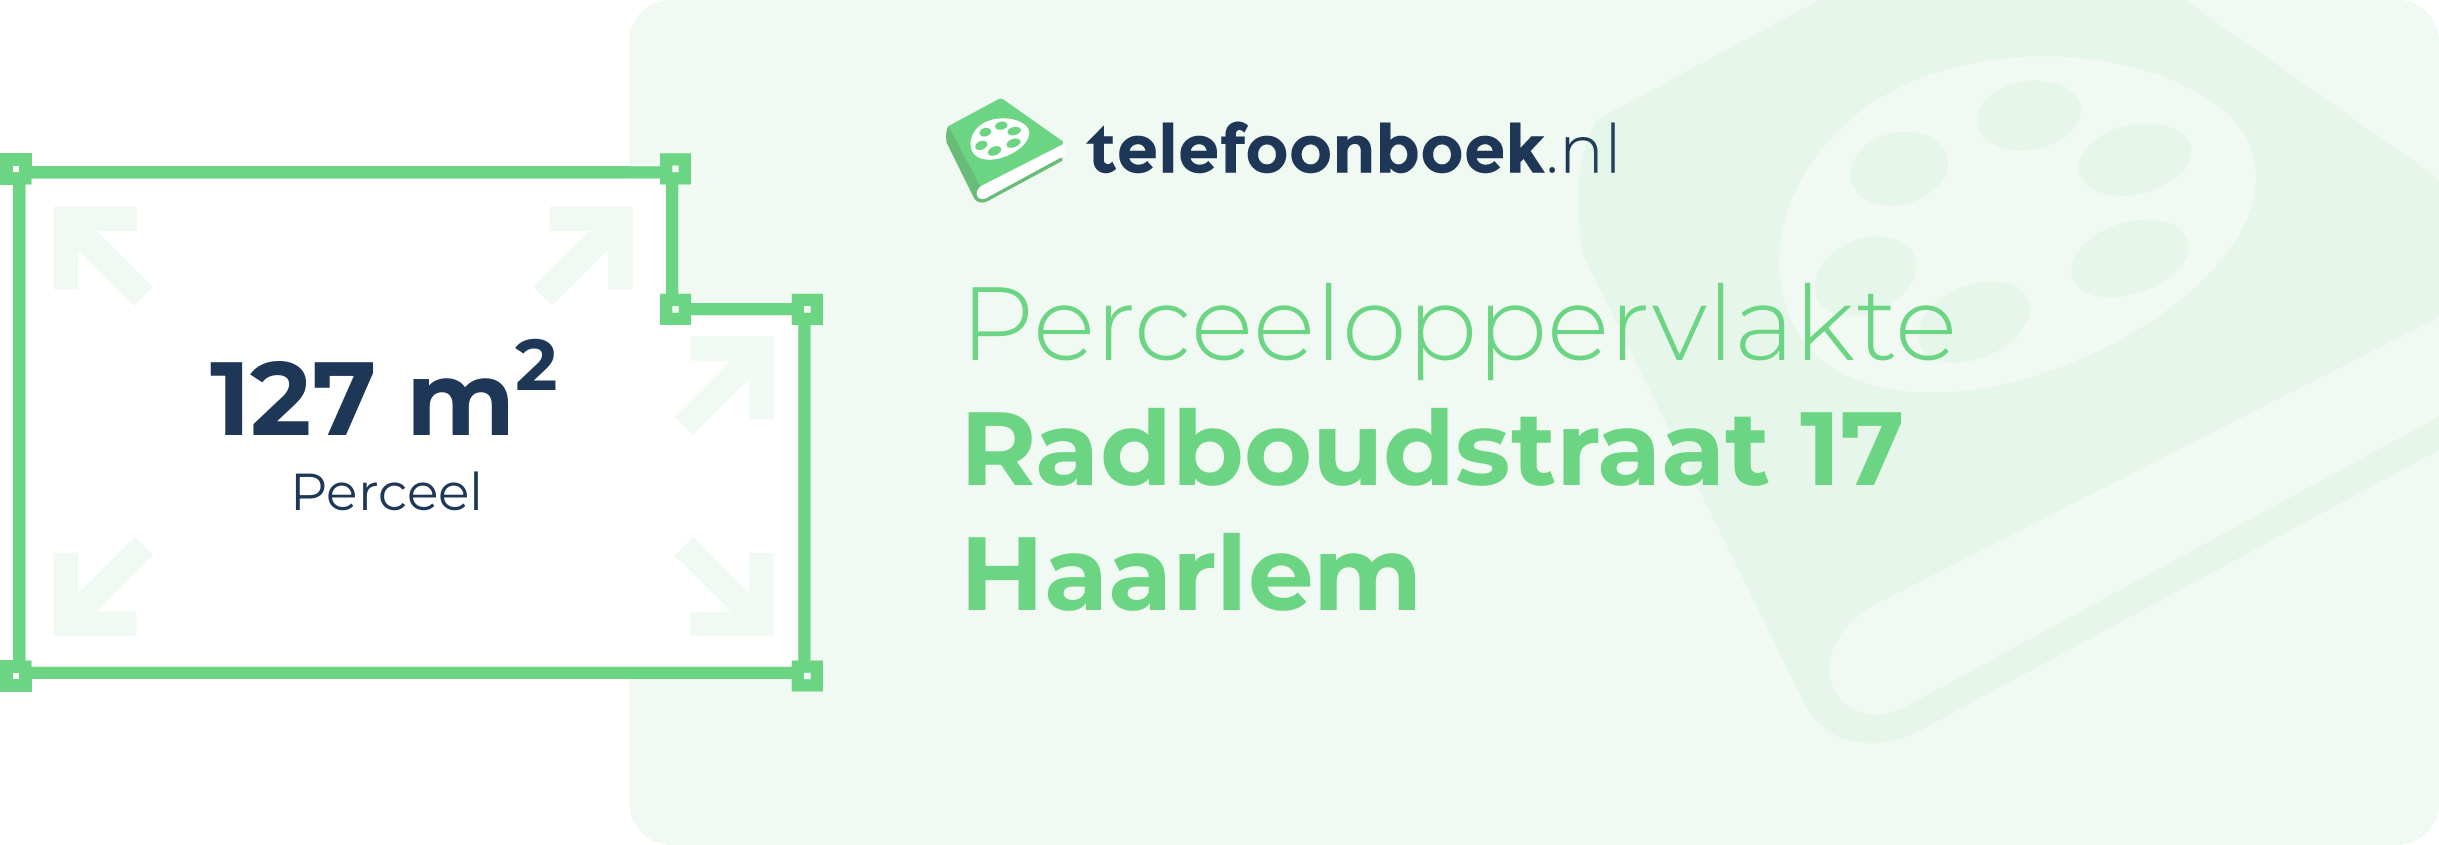 Perceeloppervlakte Radboudstraat 17 Haarlem